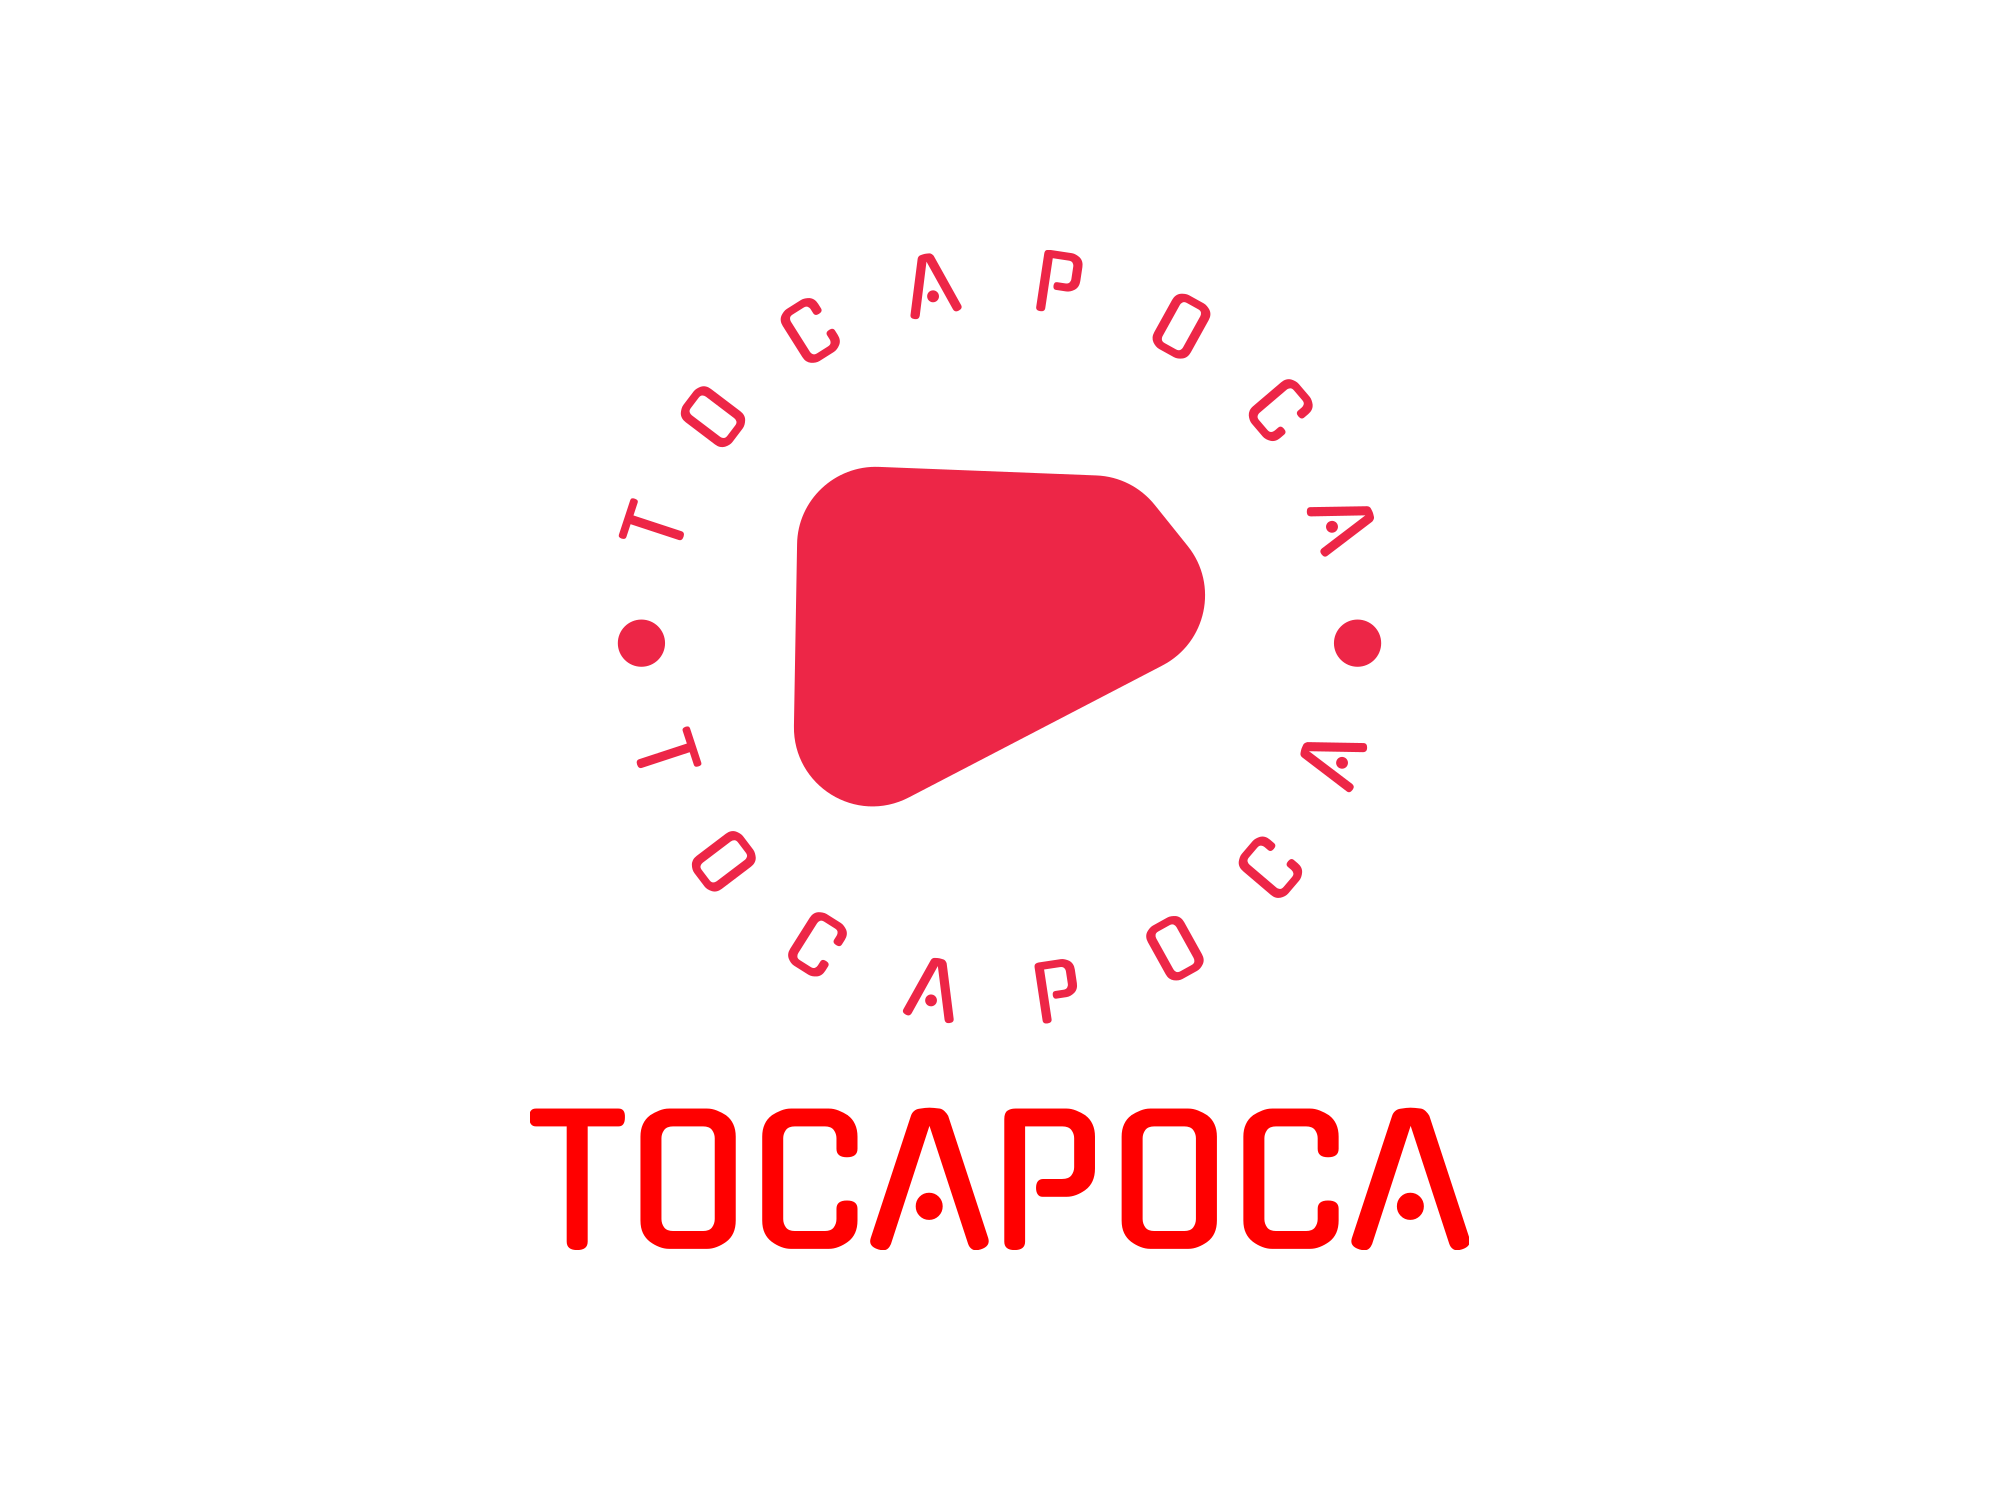 TocaPoca